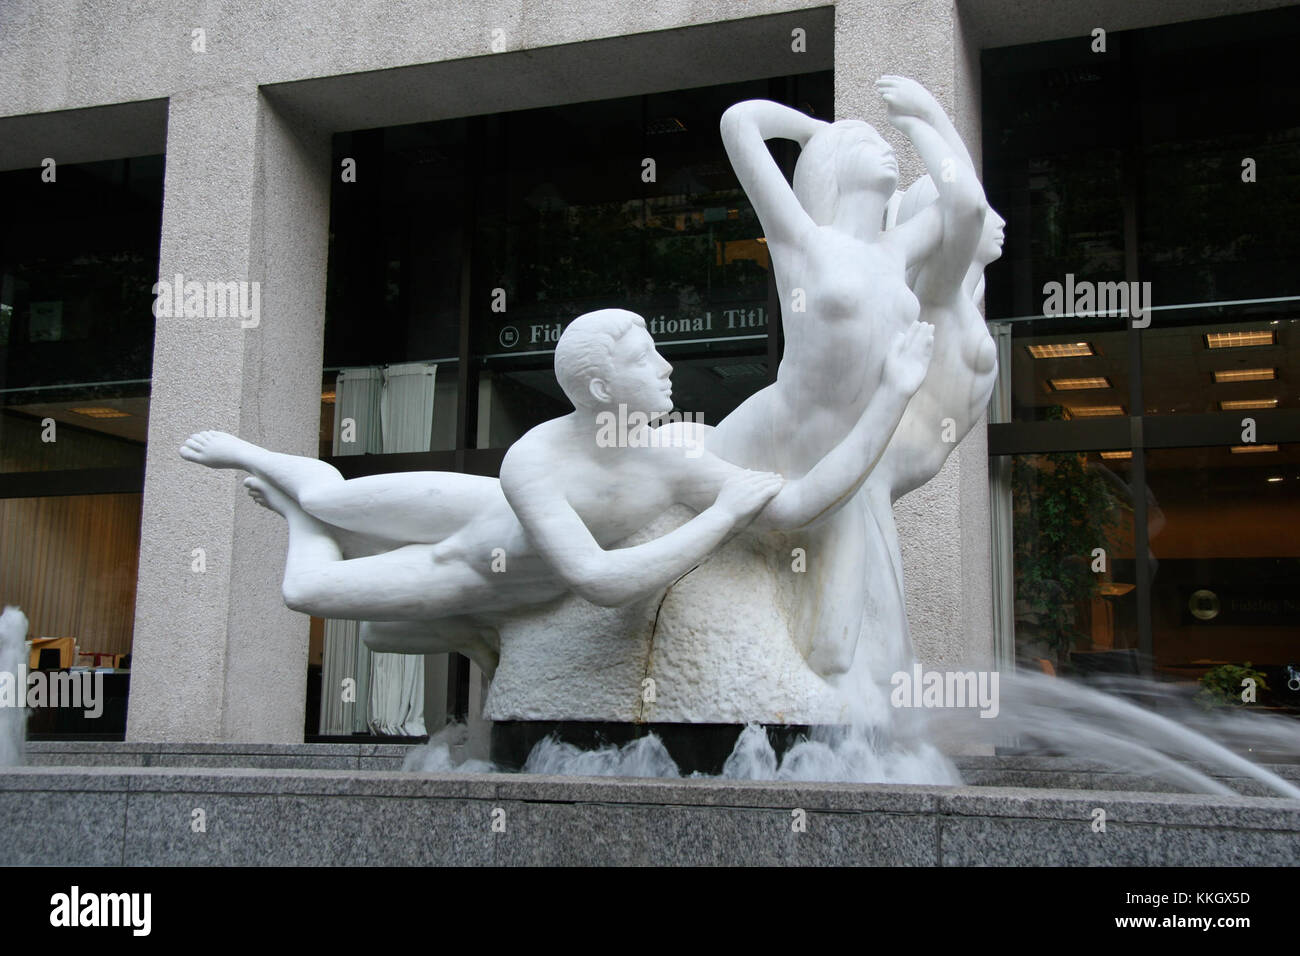 La sculpture Quest à Portland, Oregon, États-Unis Banque D'Images